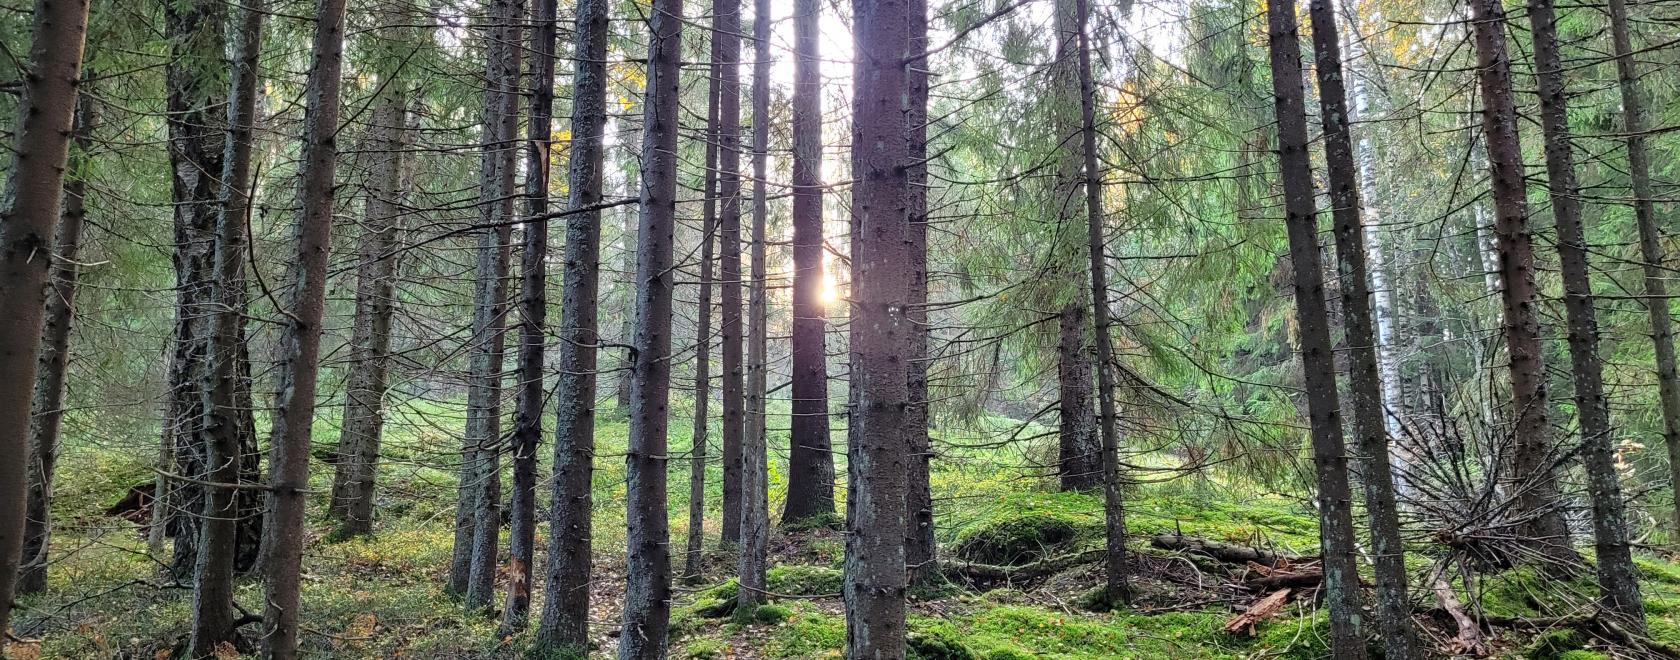  Kohti yhteisymmärrystä metsien käytön kestävyysmuutoksista -hankkeessa tuotetaan laajassa yhteistyössä metsäalan toimijoiden yhteinen ehdotus siitä, miten metsien käytön kestävyyttä mitataan ja seurataan Suomessa. Kuva: Anna Bui